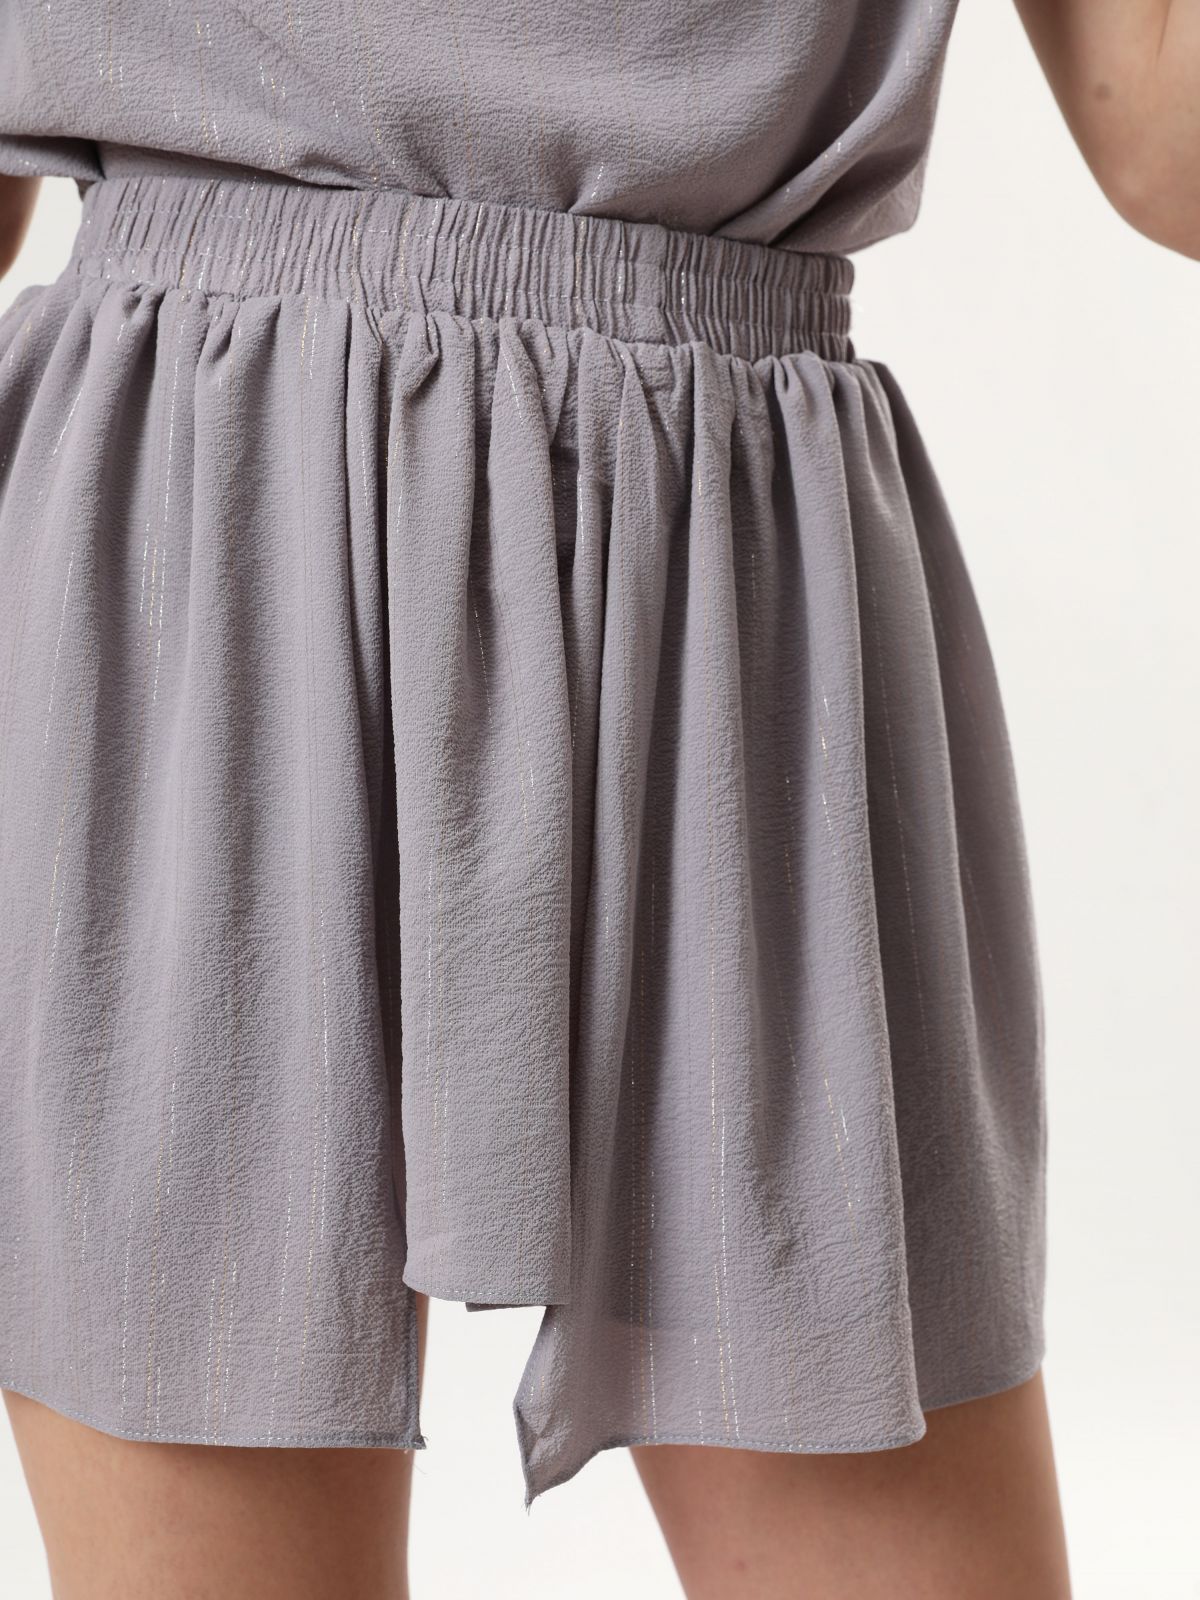  חצאית מיני בהדפס פסים מטאליים של YANGA